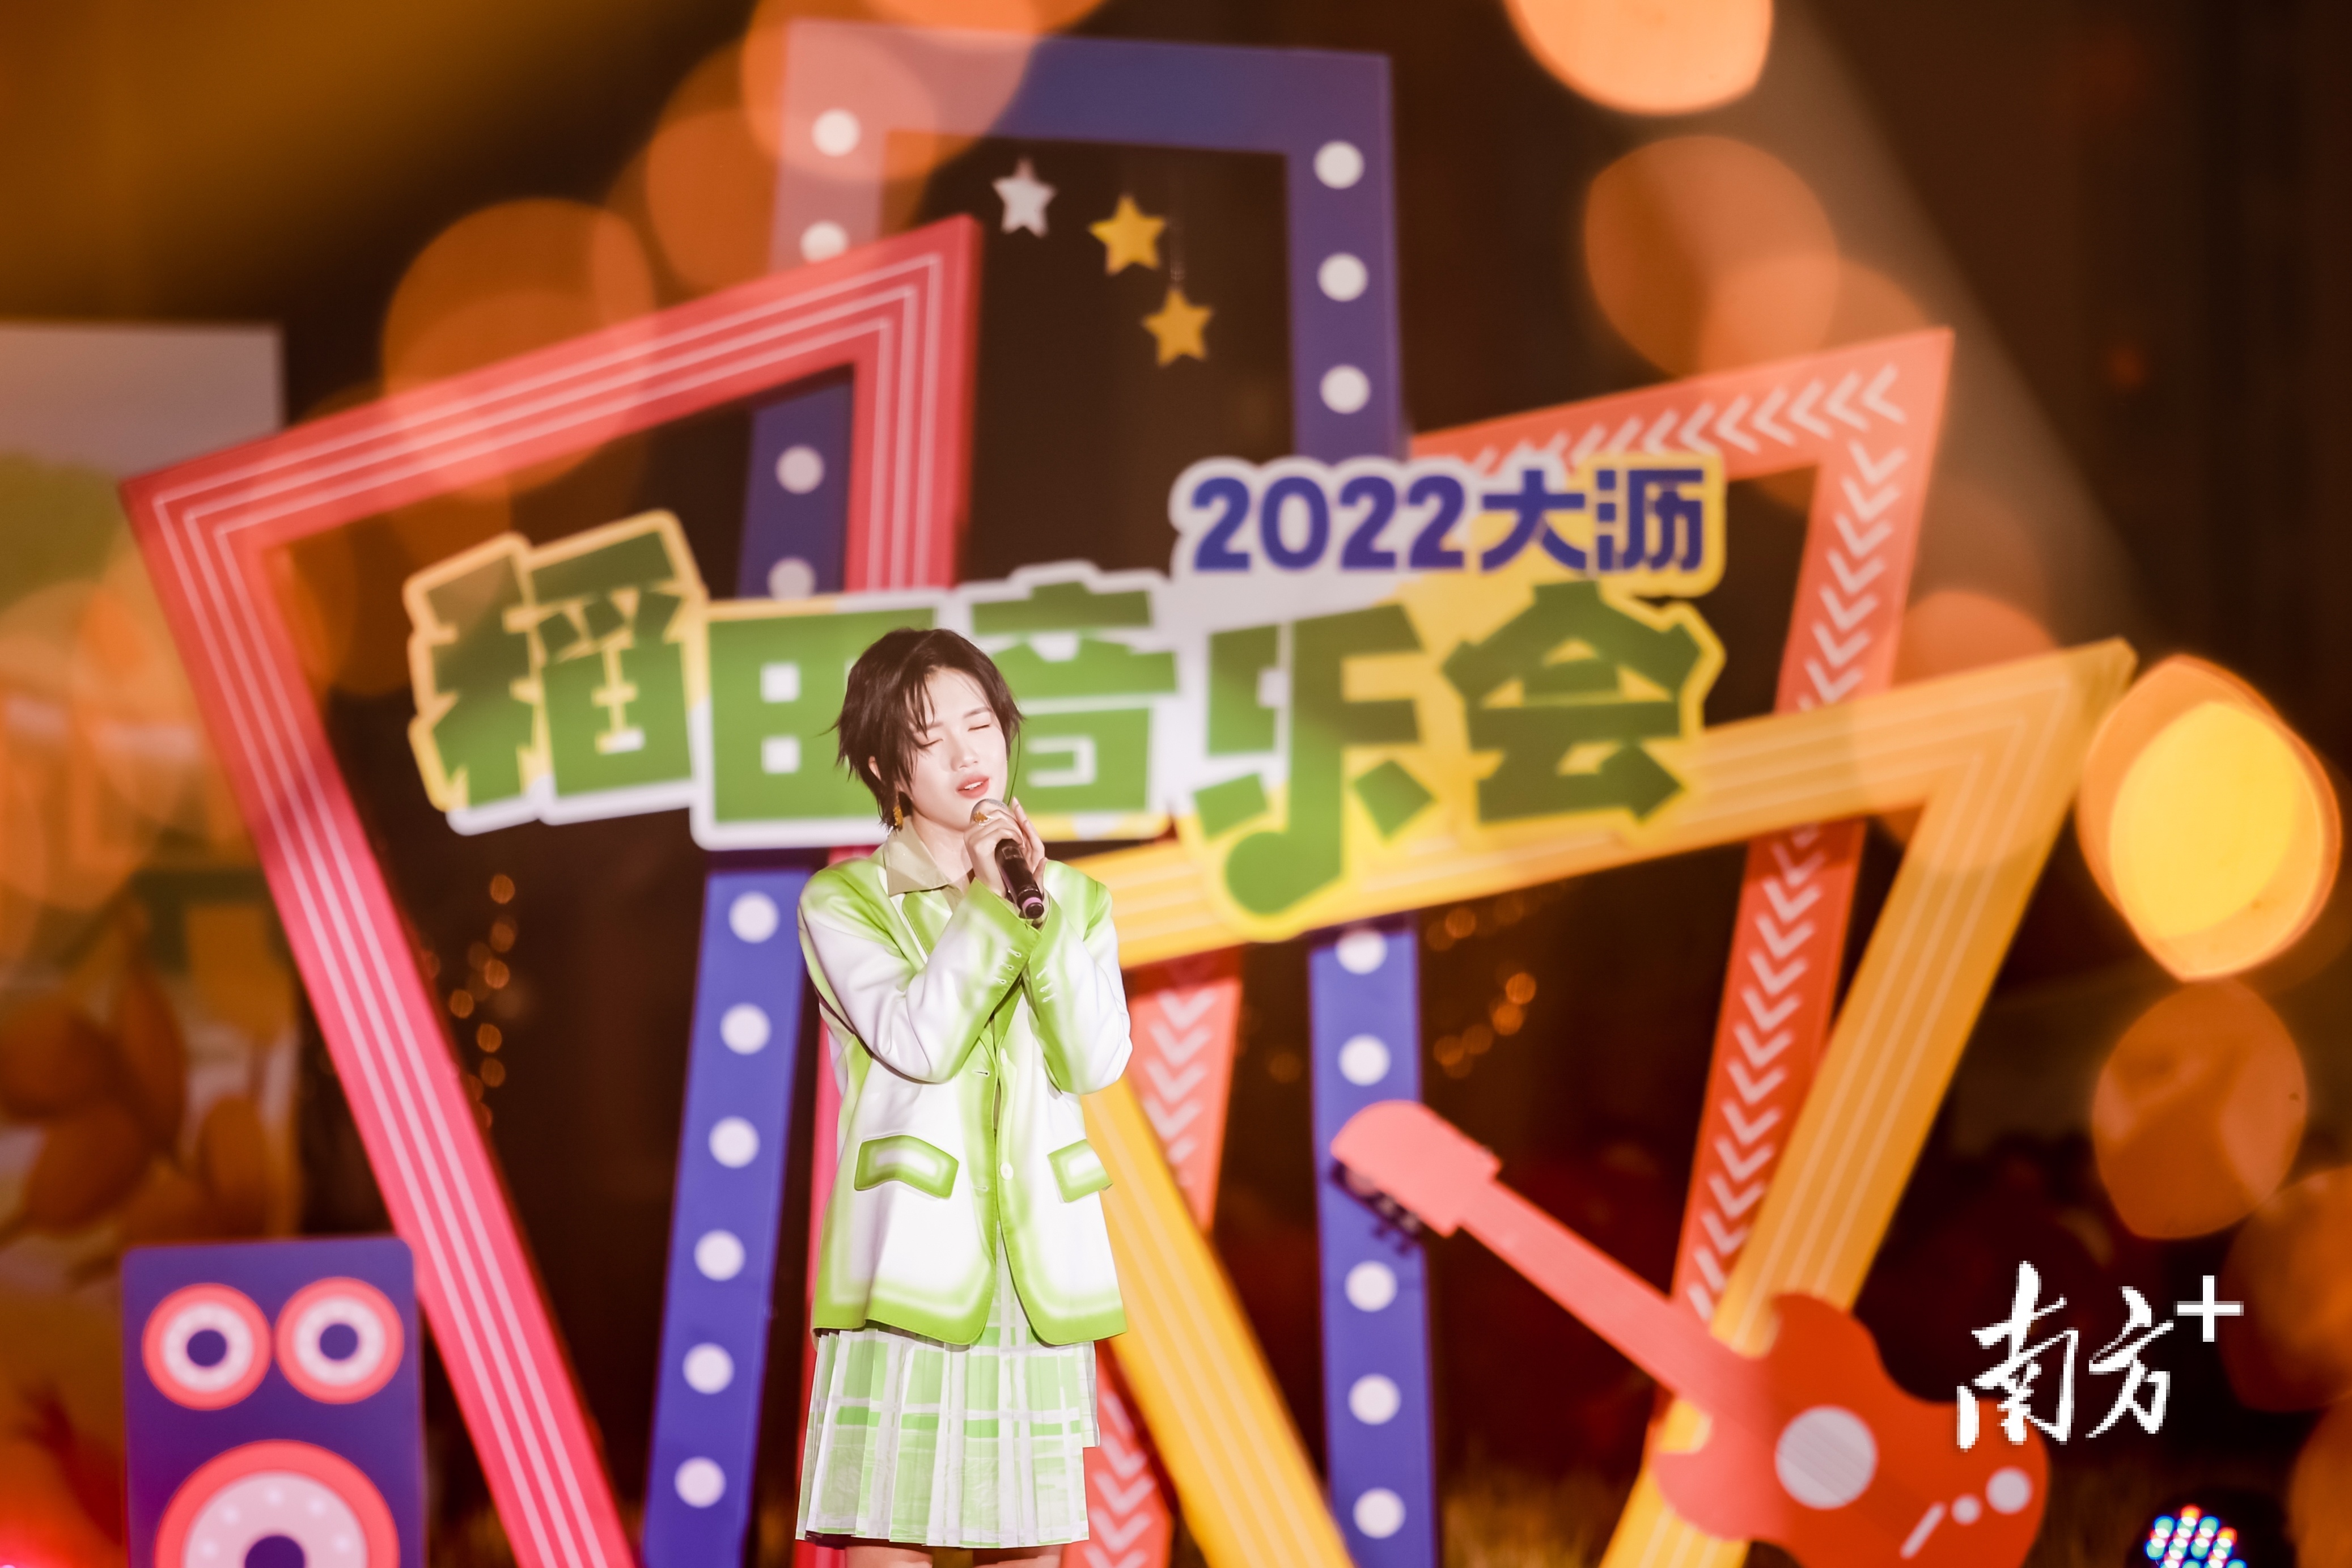 中国好声音2022年度总冠军、大沥学子梁玉莹现场为大沥群众送去动听的歌声。